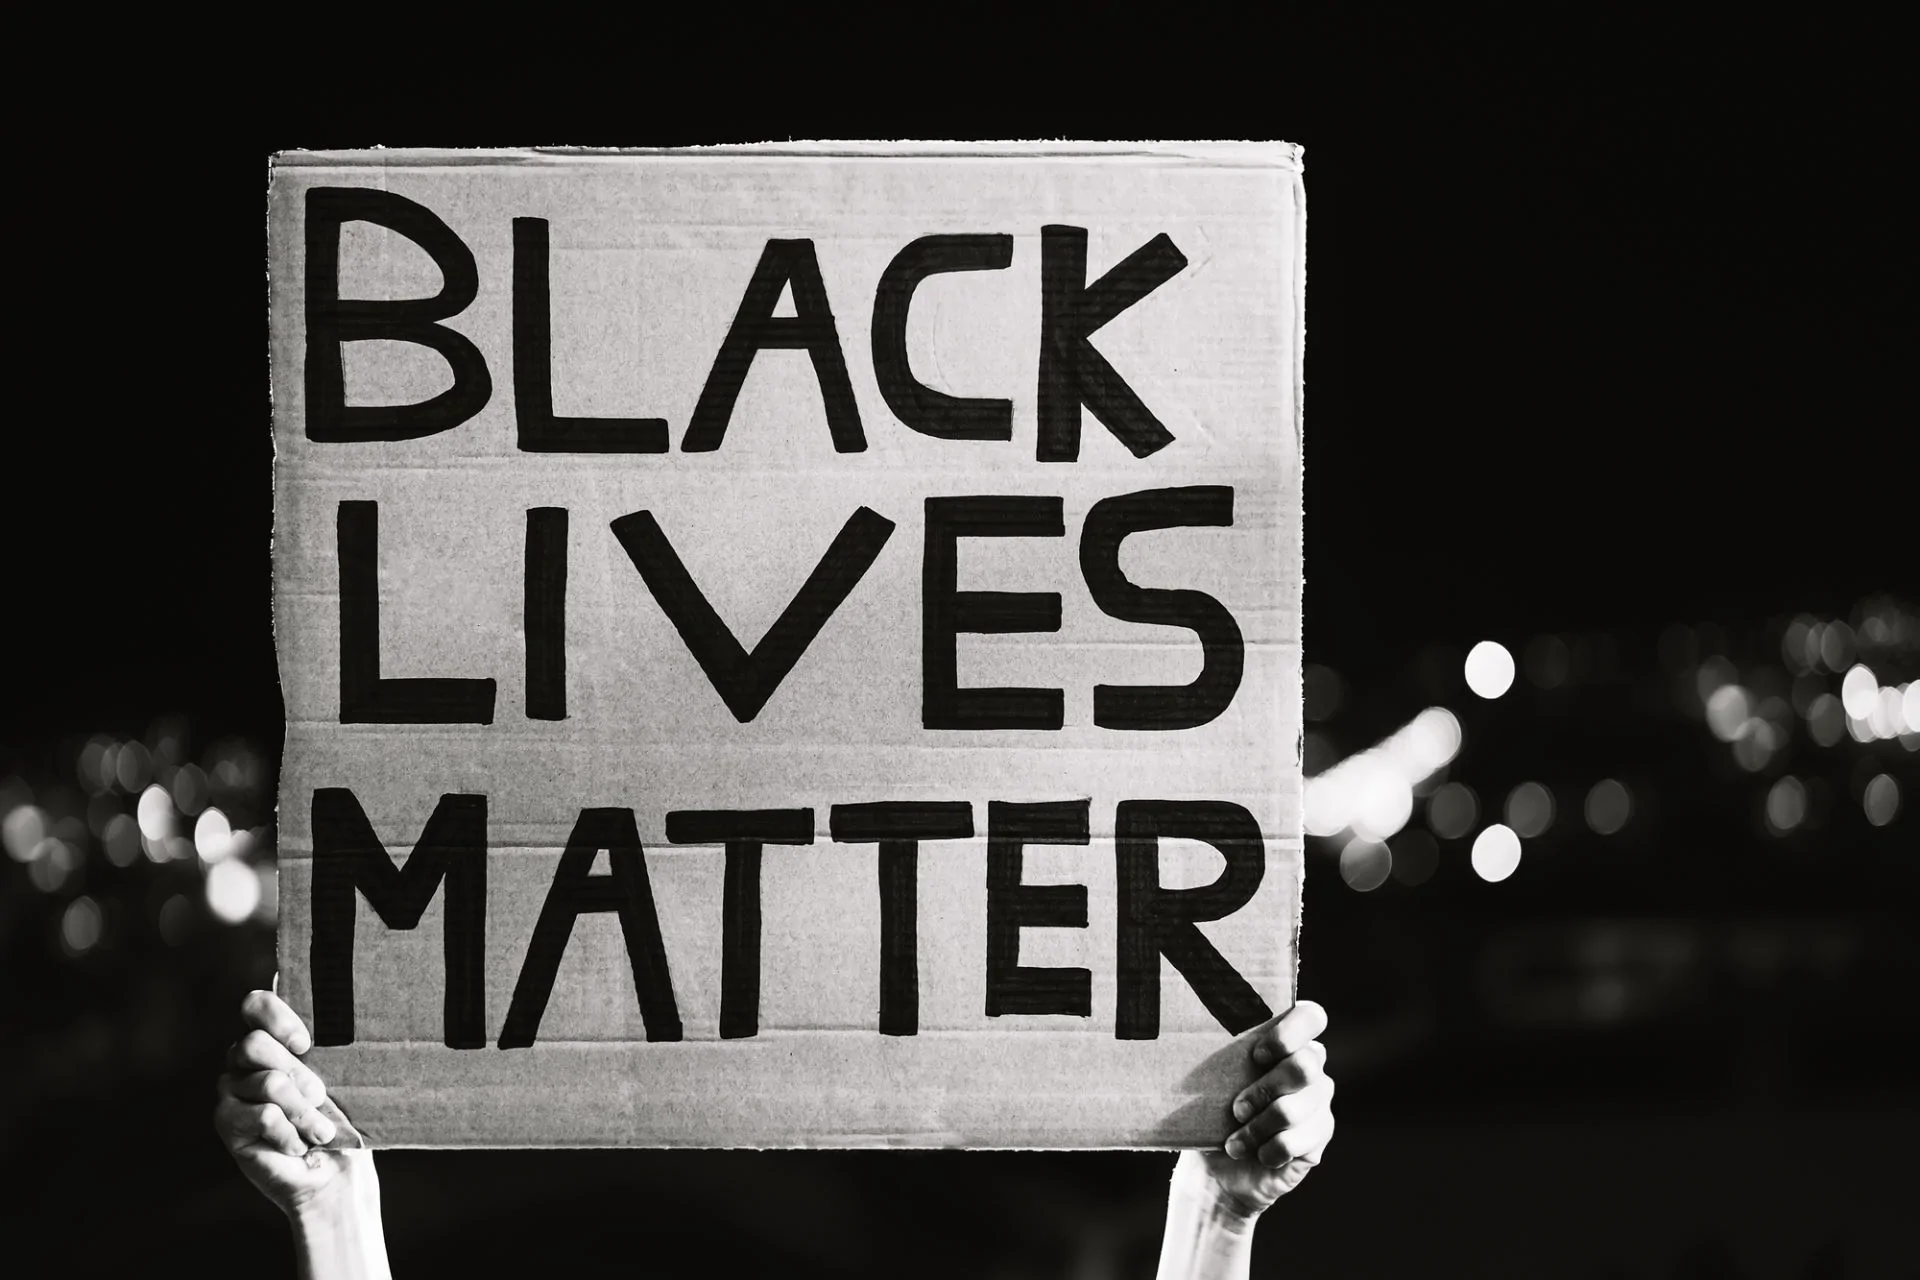 Black lives matter banner